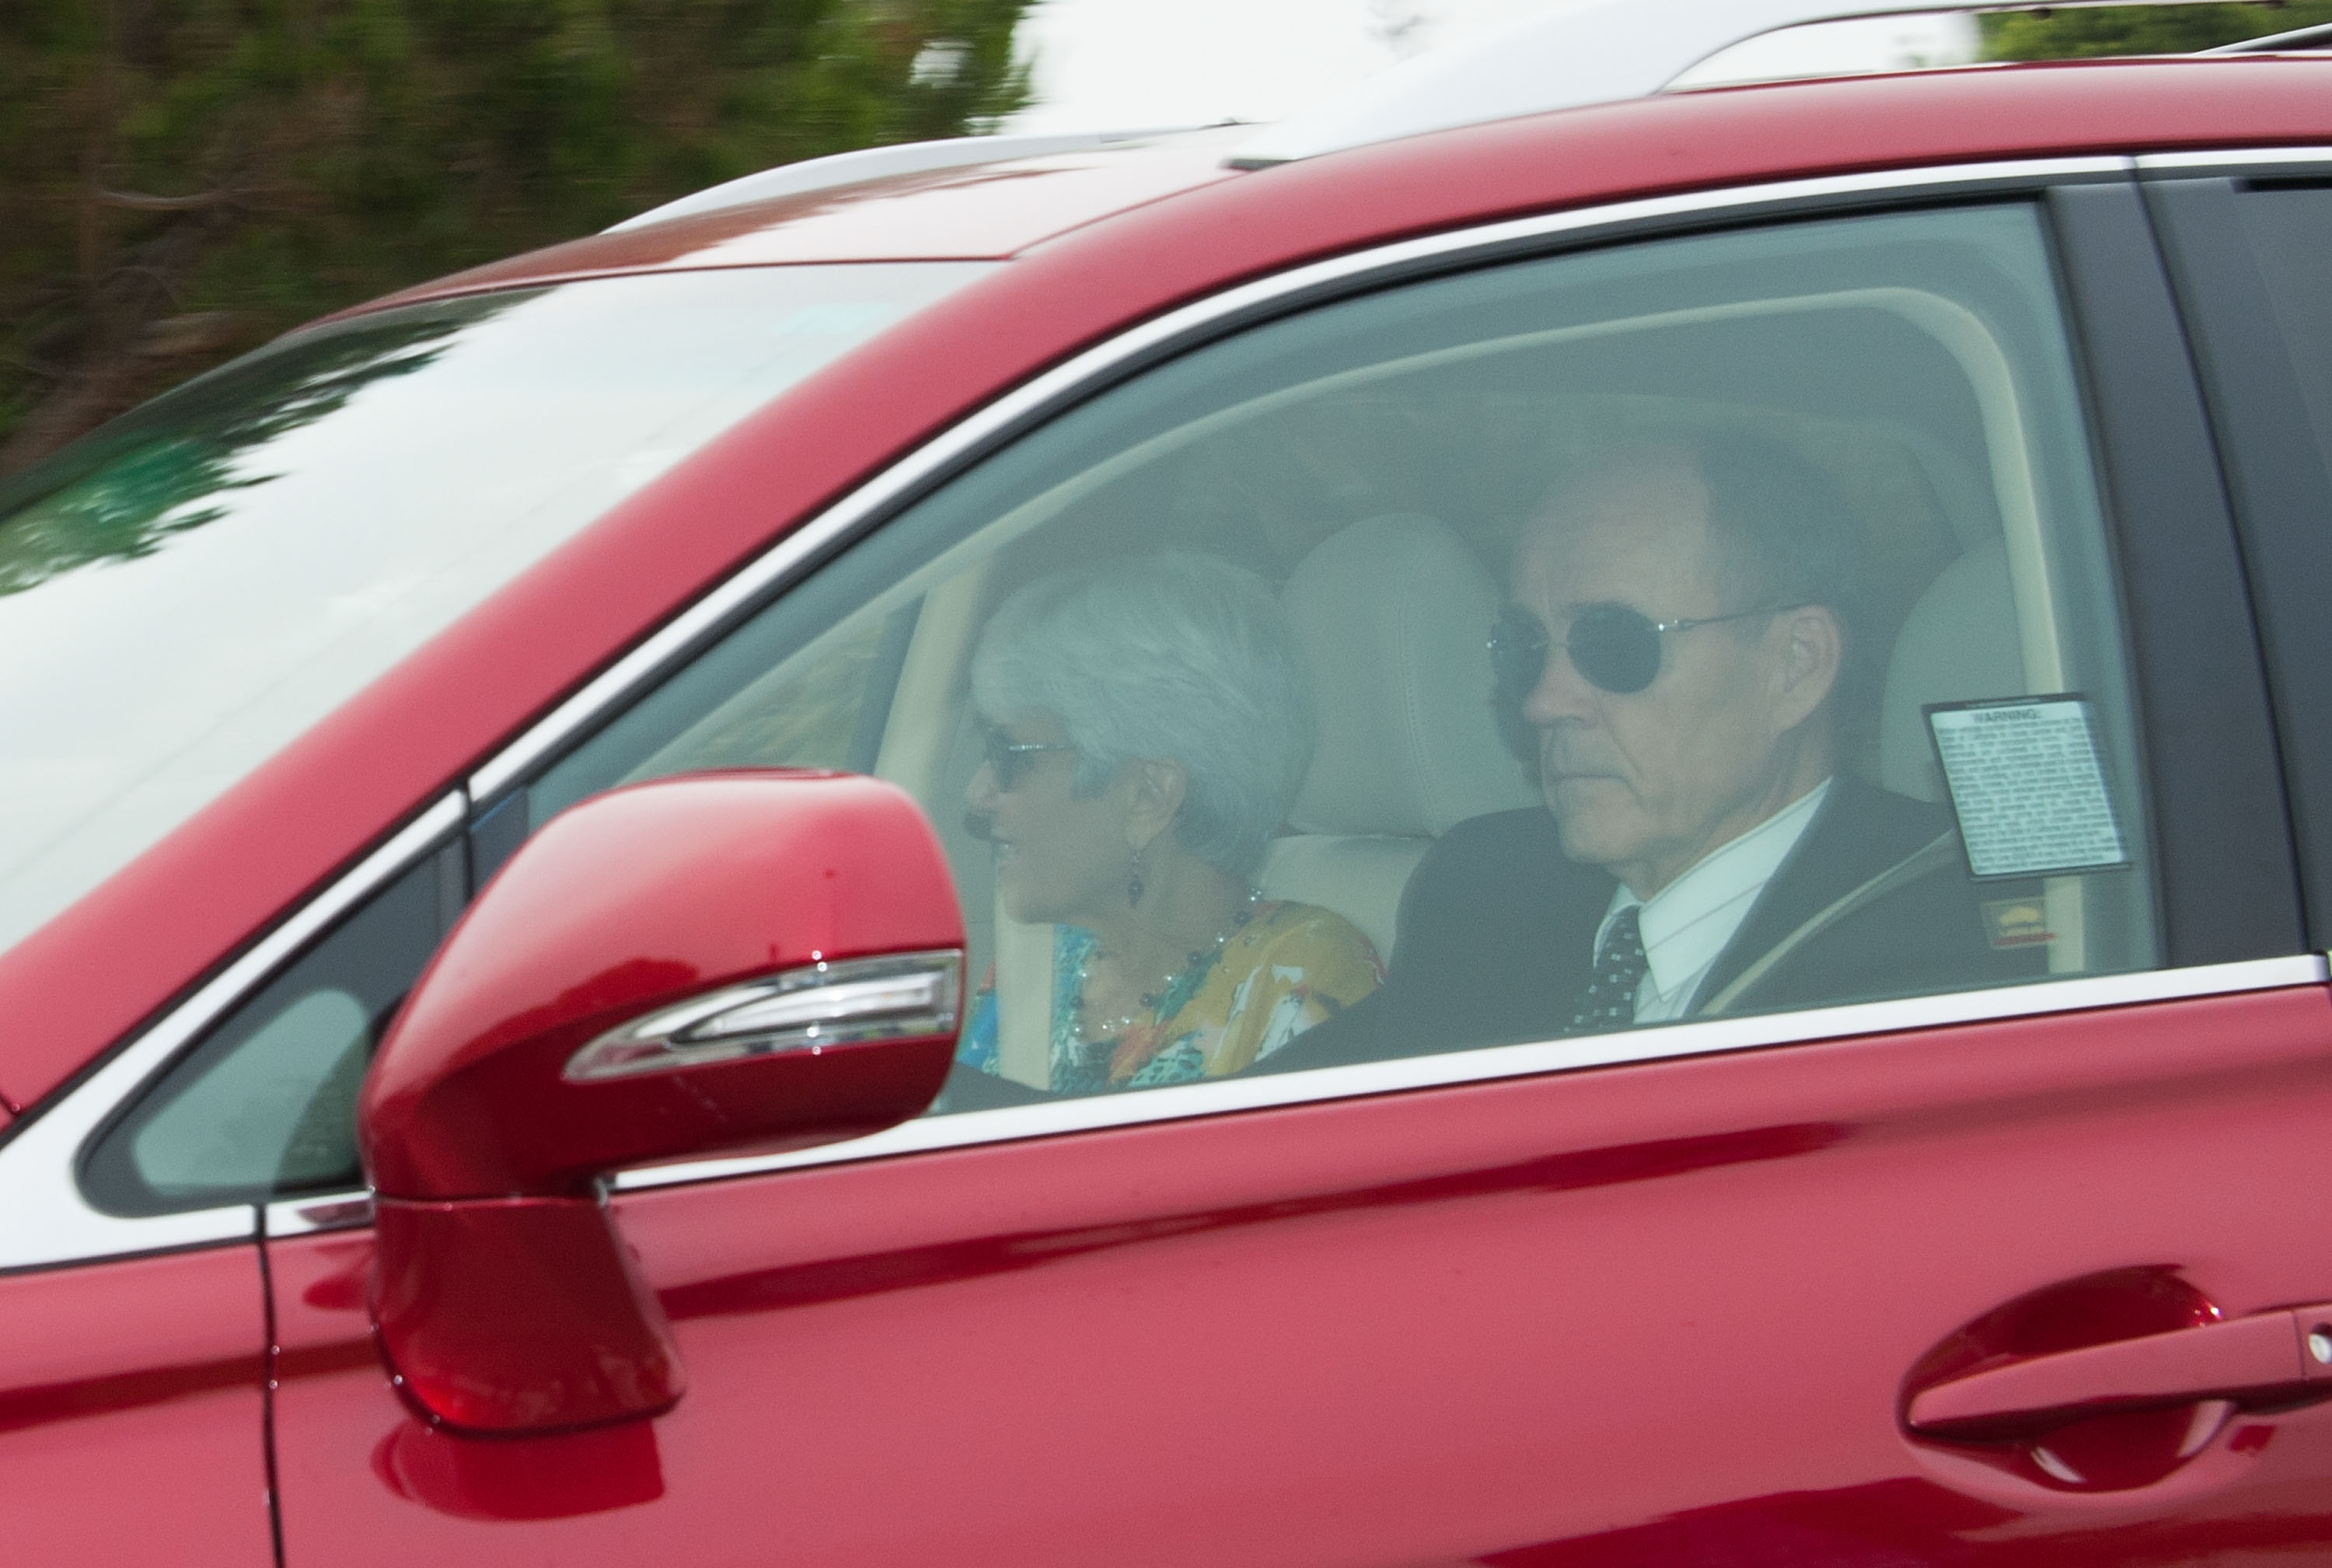 Lynn Bynes et Rick Bynes, les parents d'Amanda Bynes, le 9 août 2013, à Oxnard, en Californie | Source : Getty Images